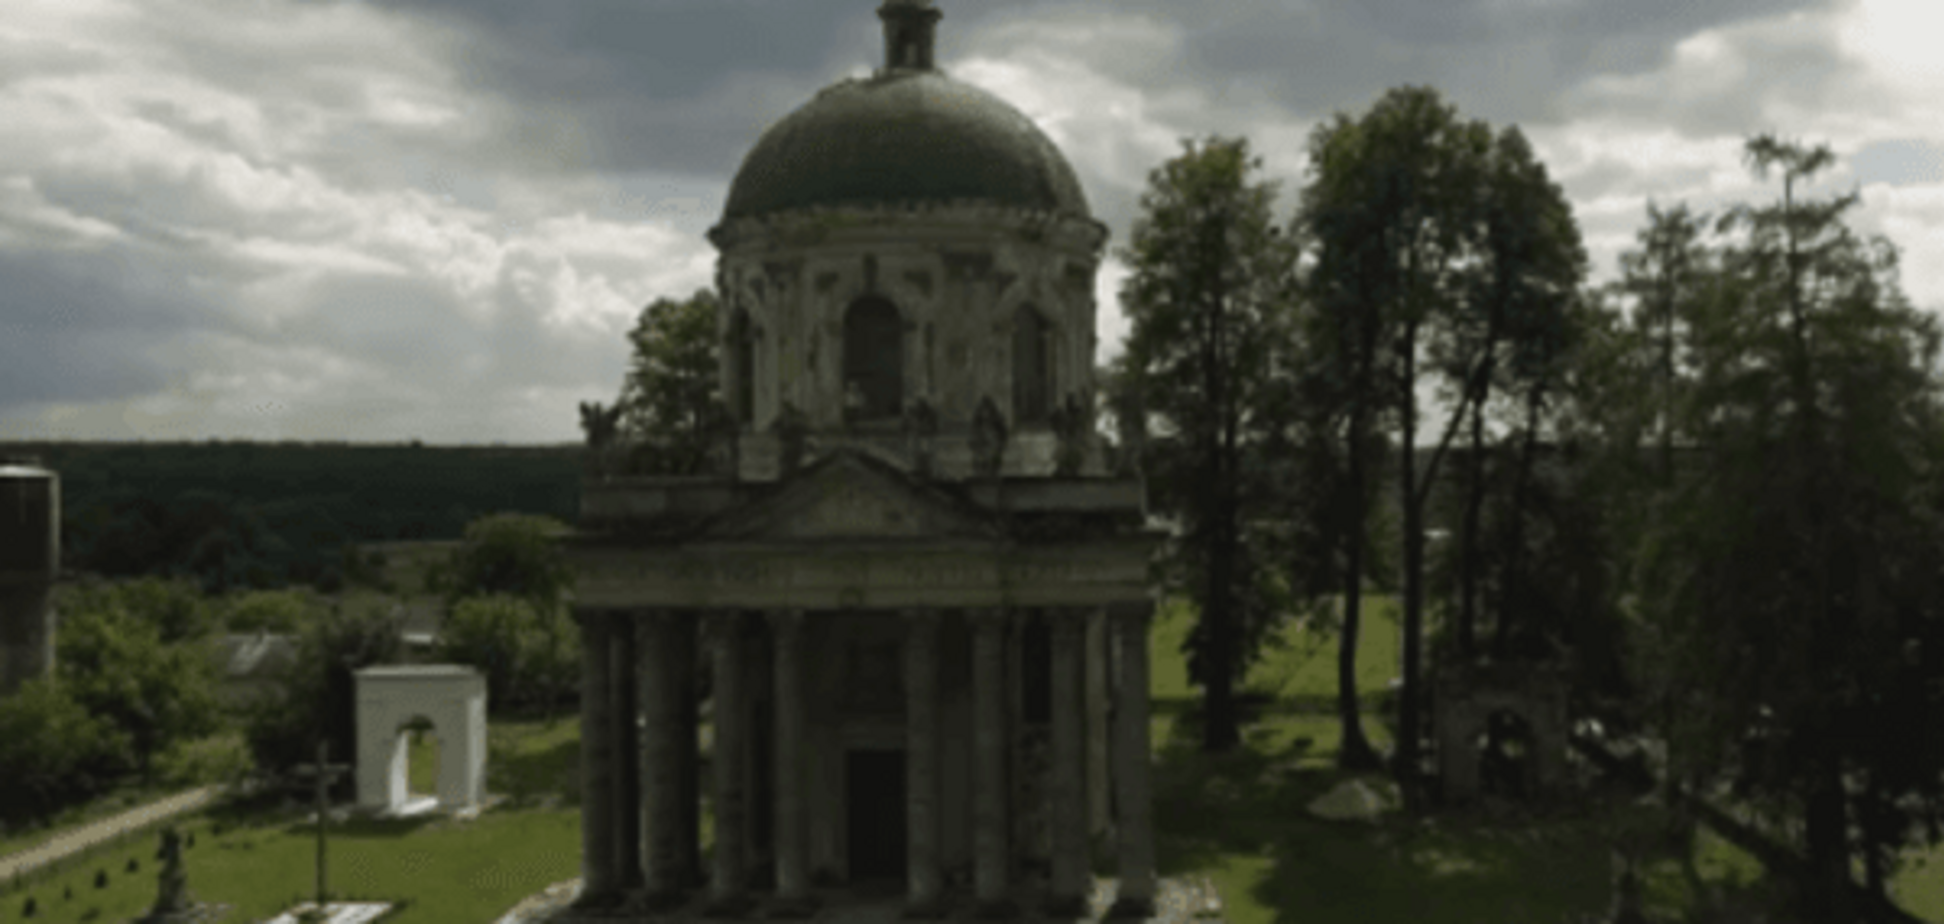 Храм 18 века умирает: дрон заснял плачевное состояние исторической жемчужины Львовщины. Видеофакт